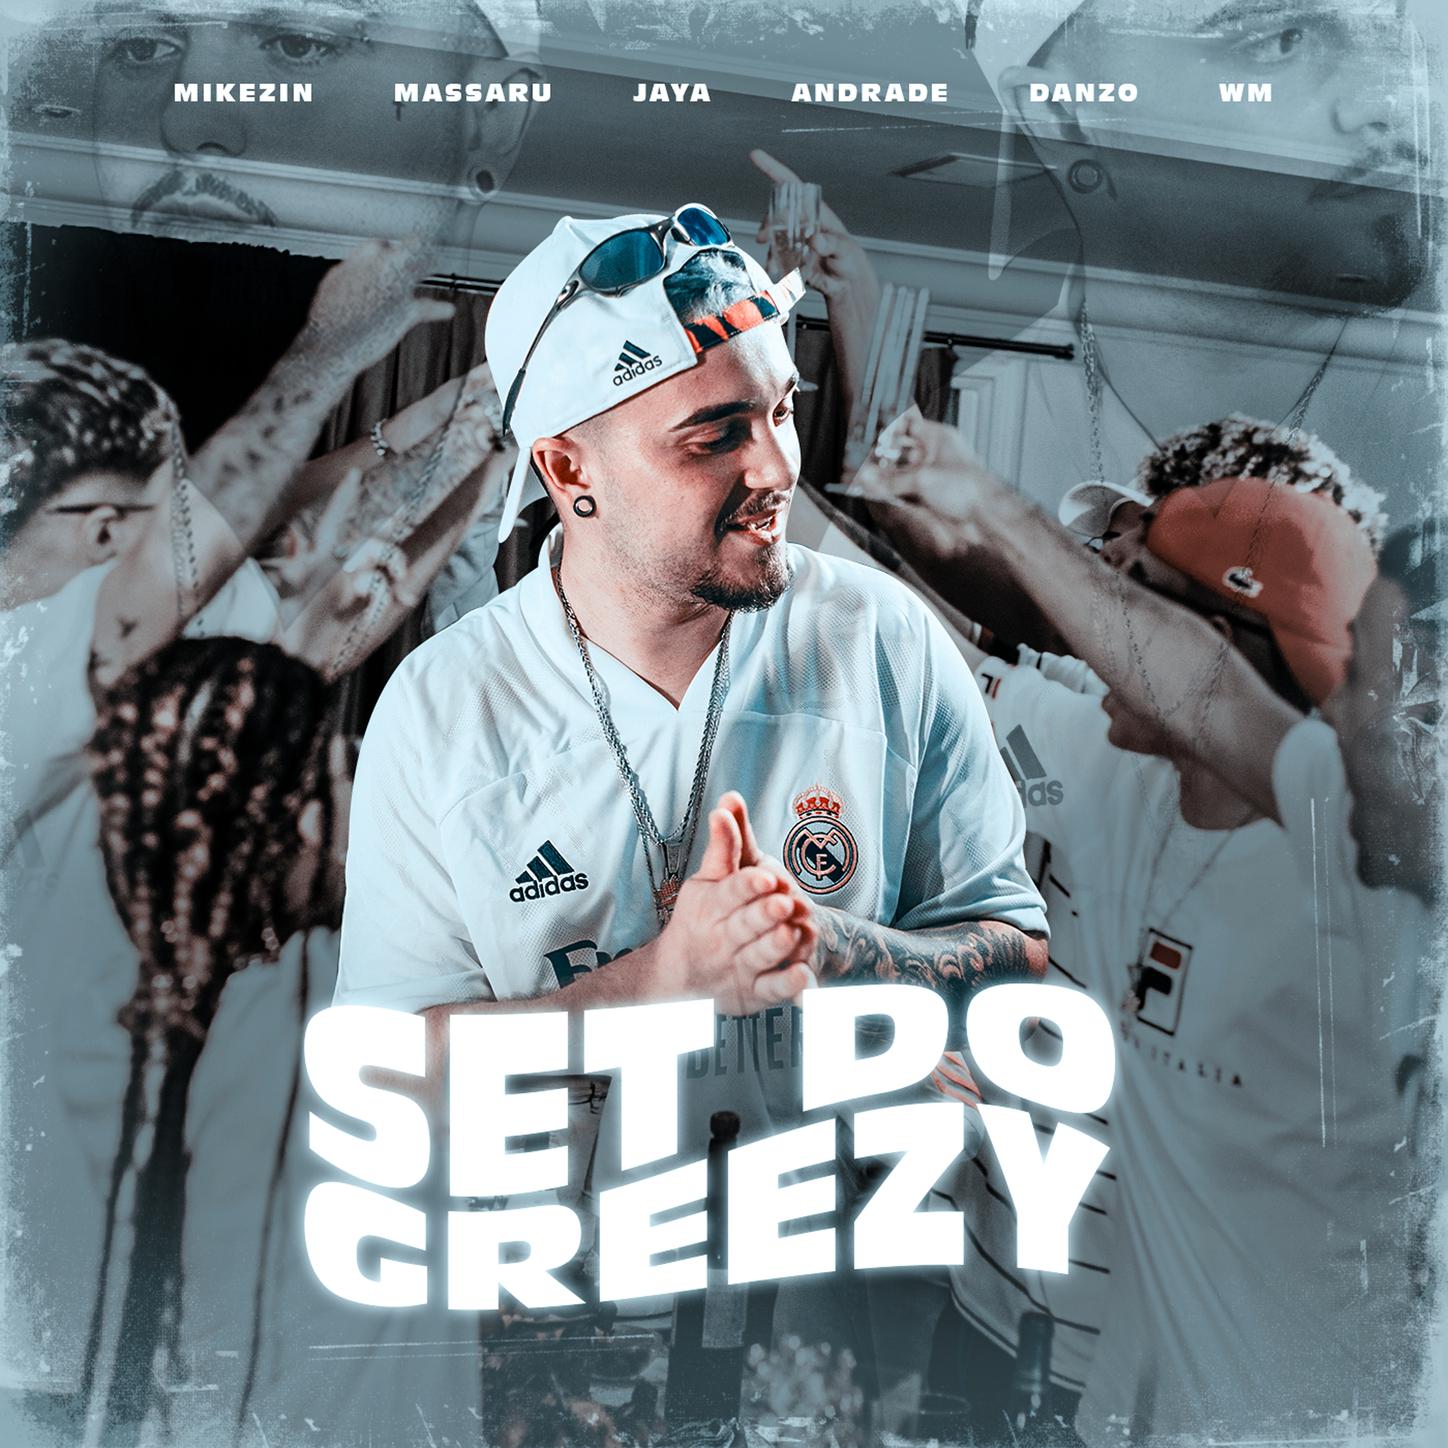 Aldeia Records - SET DO GREEZY 1.0